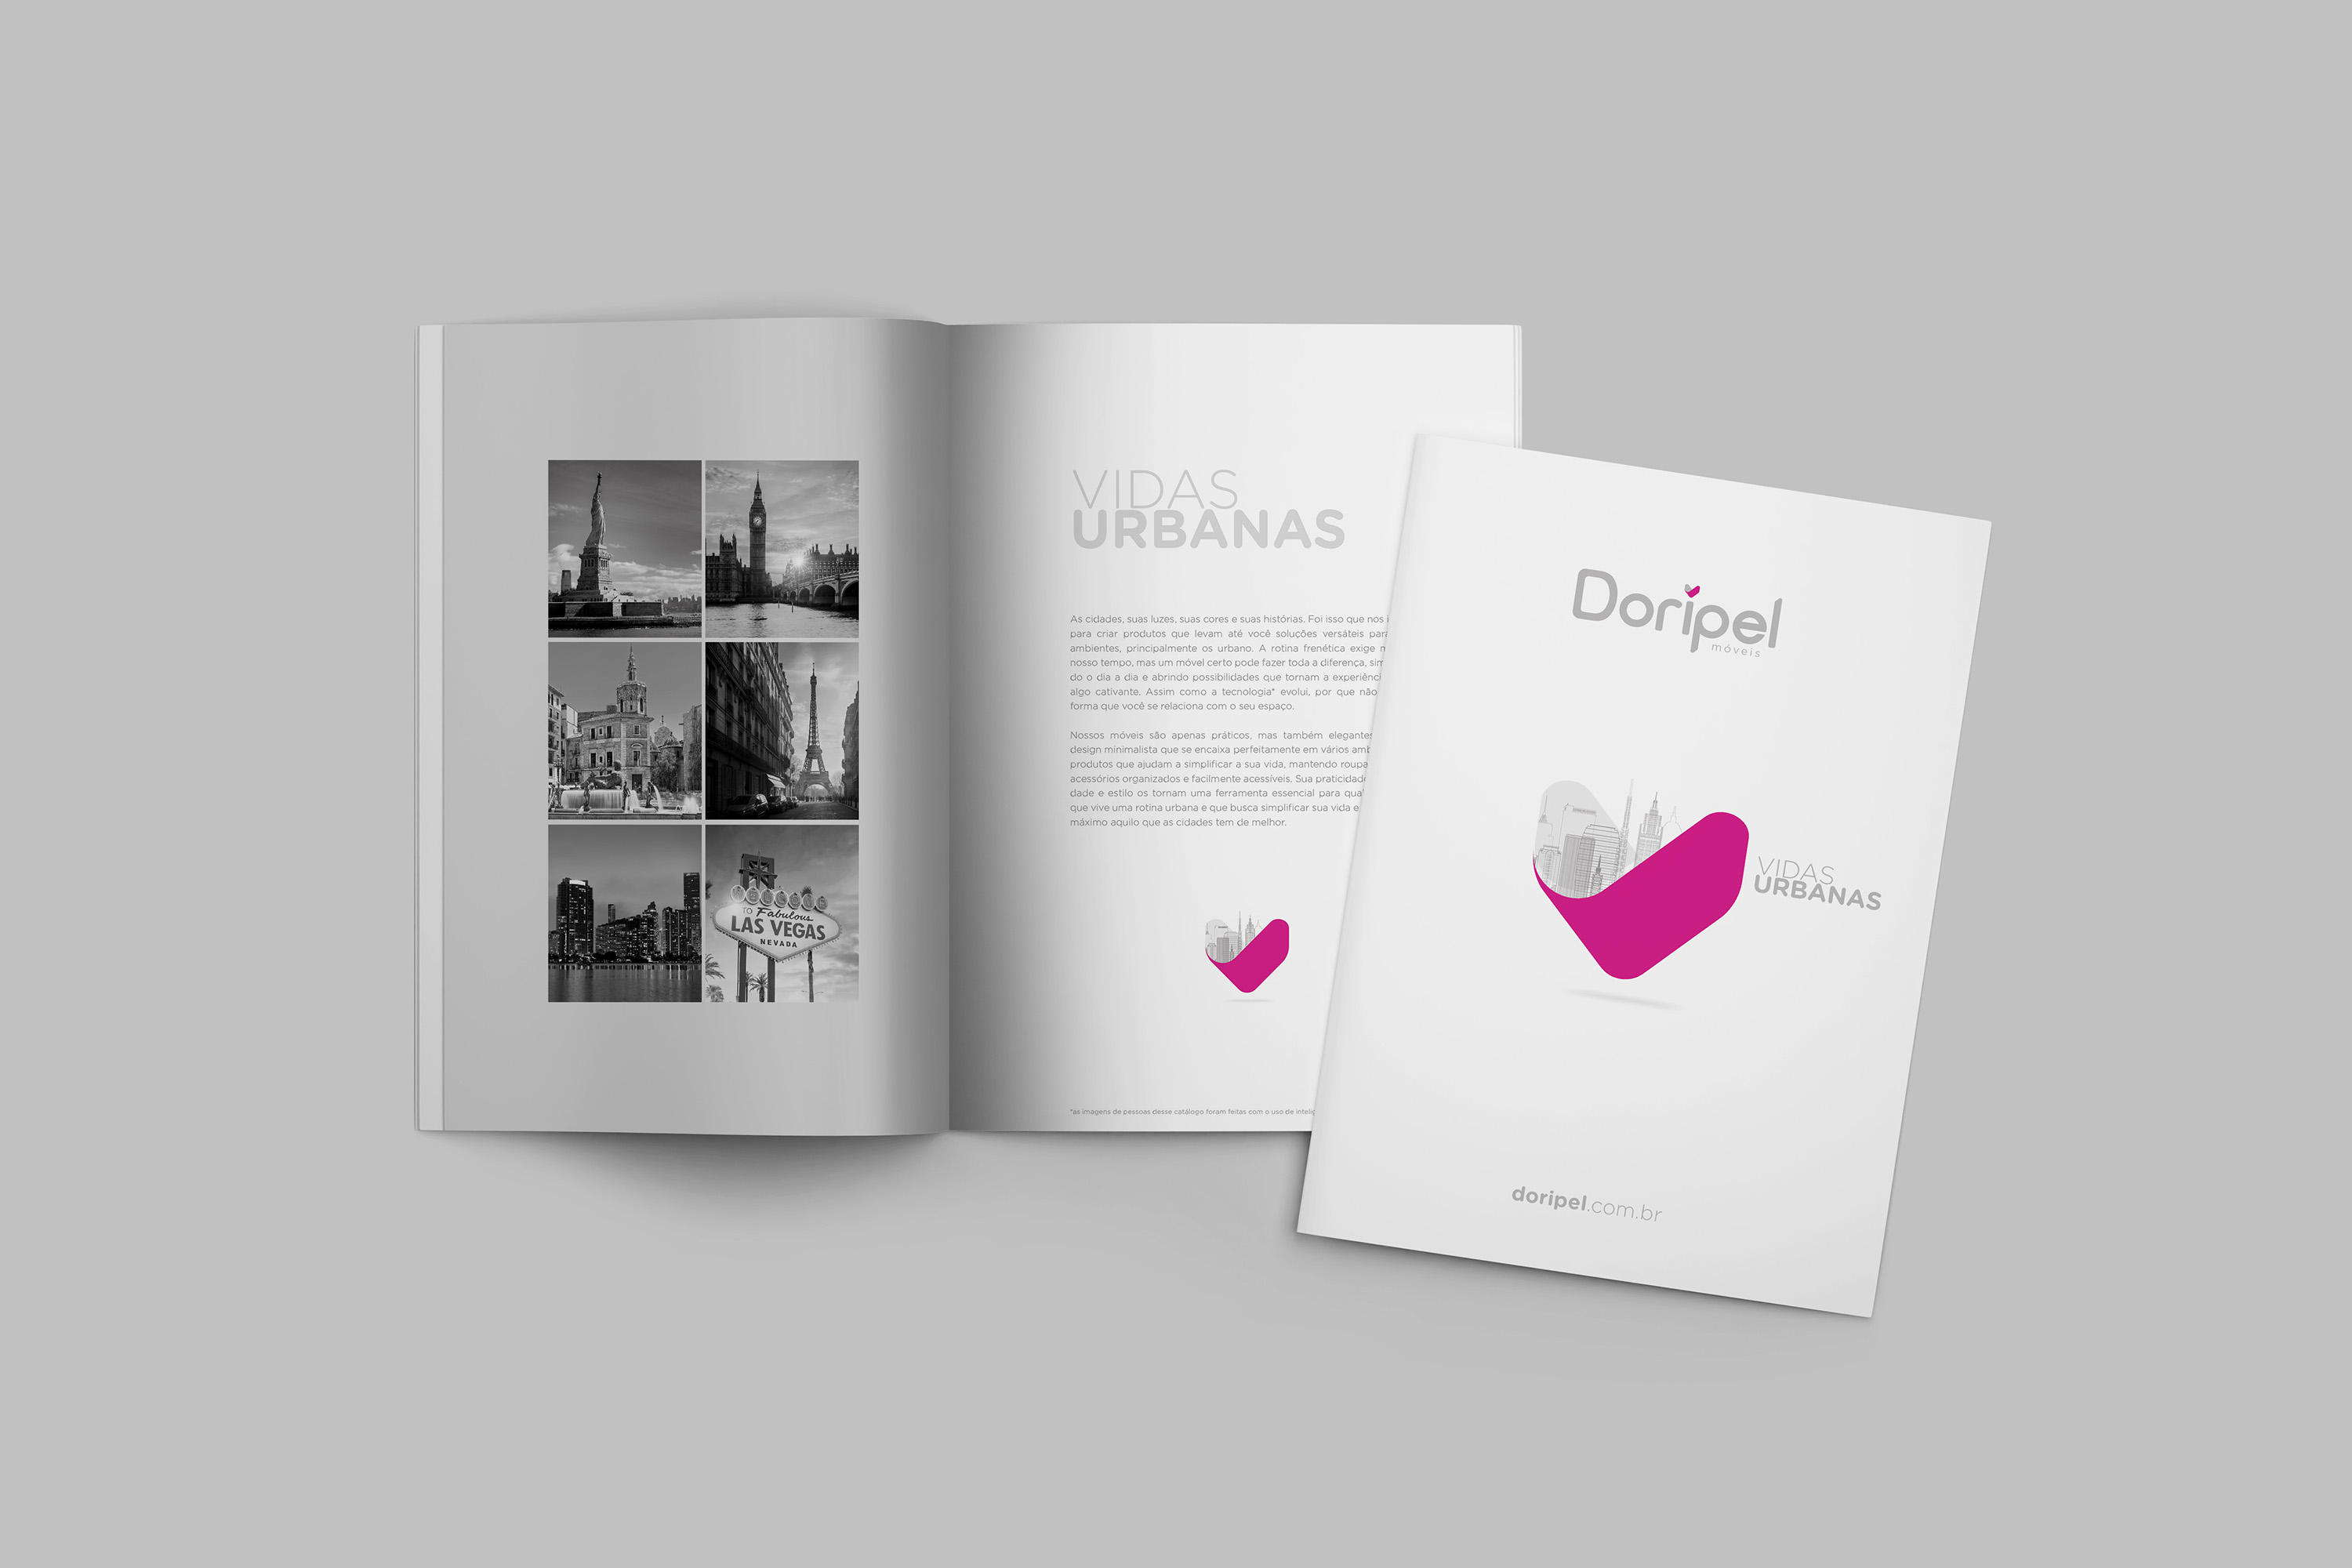 Doripel - Catálogo de Móveis - Vidas Urbanas